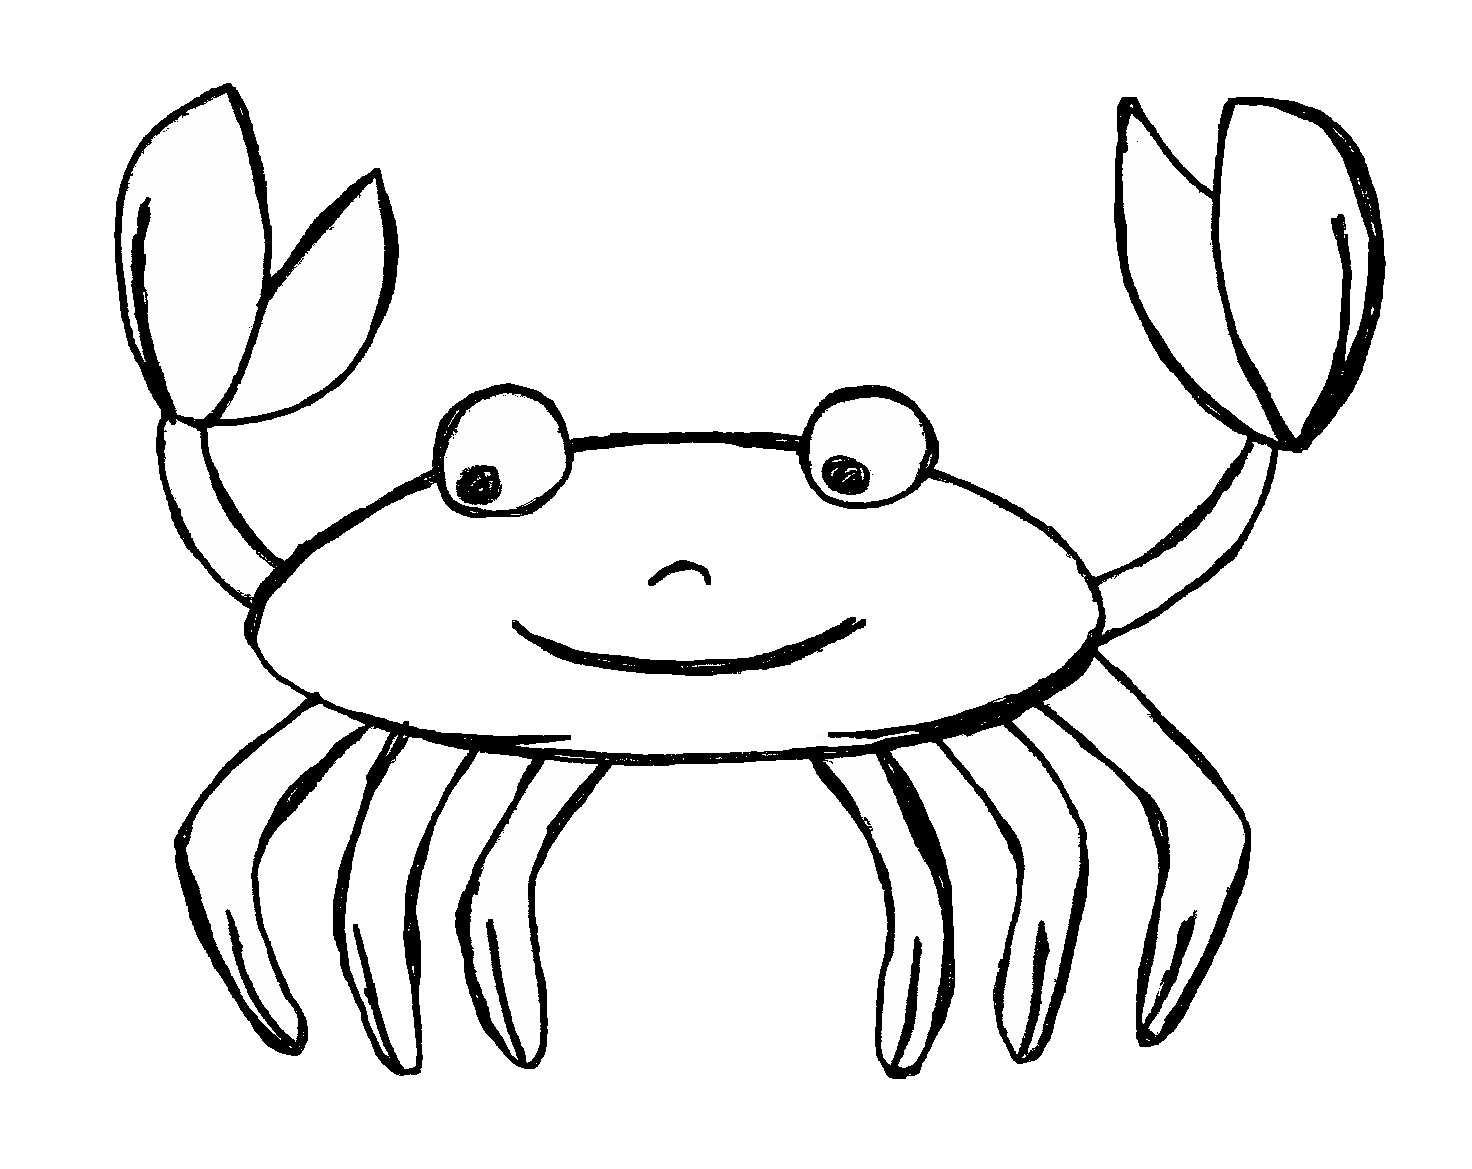 Clipart fish crab. Stingray drawing at getdrawings